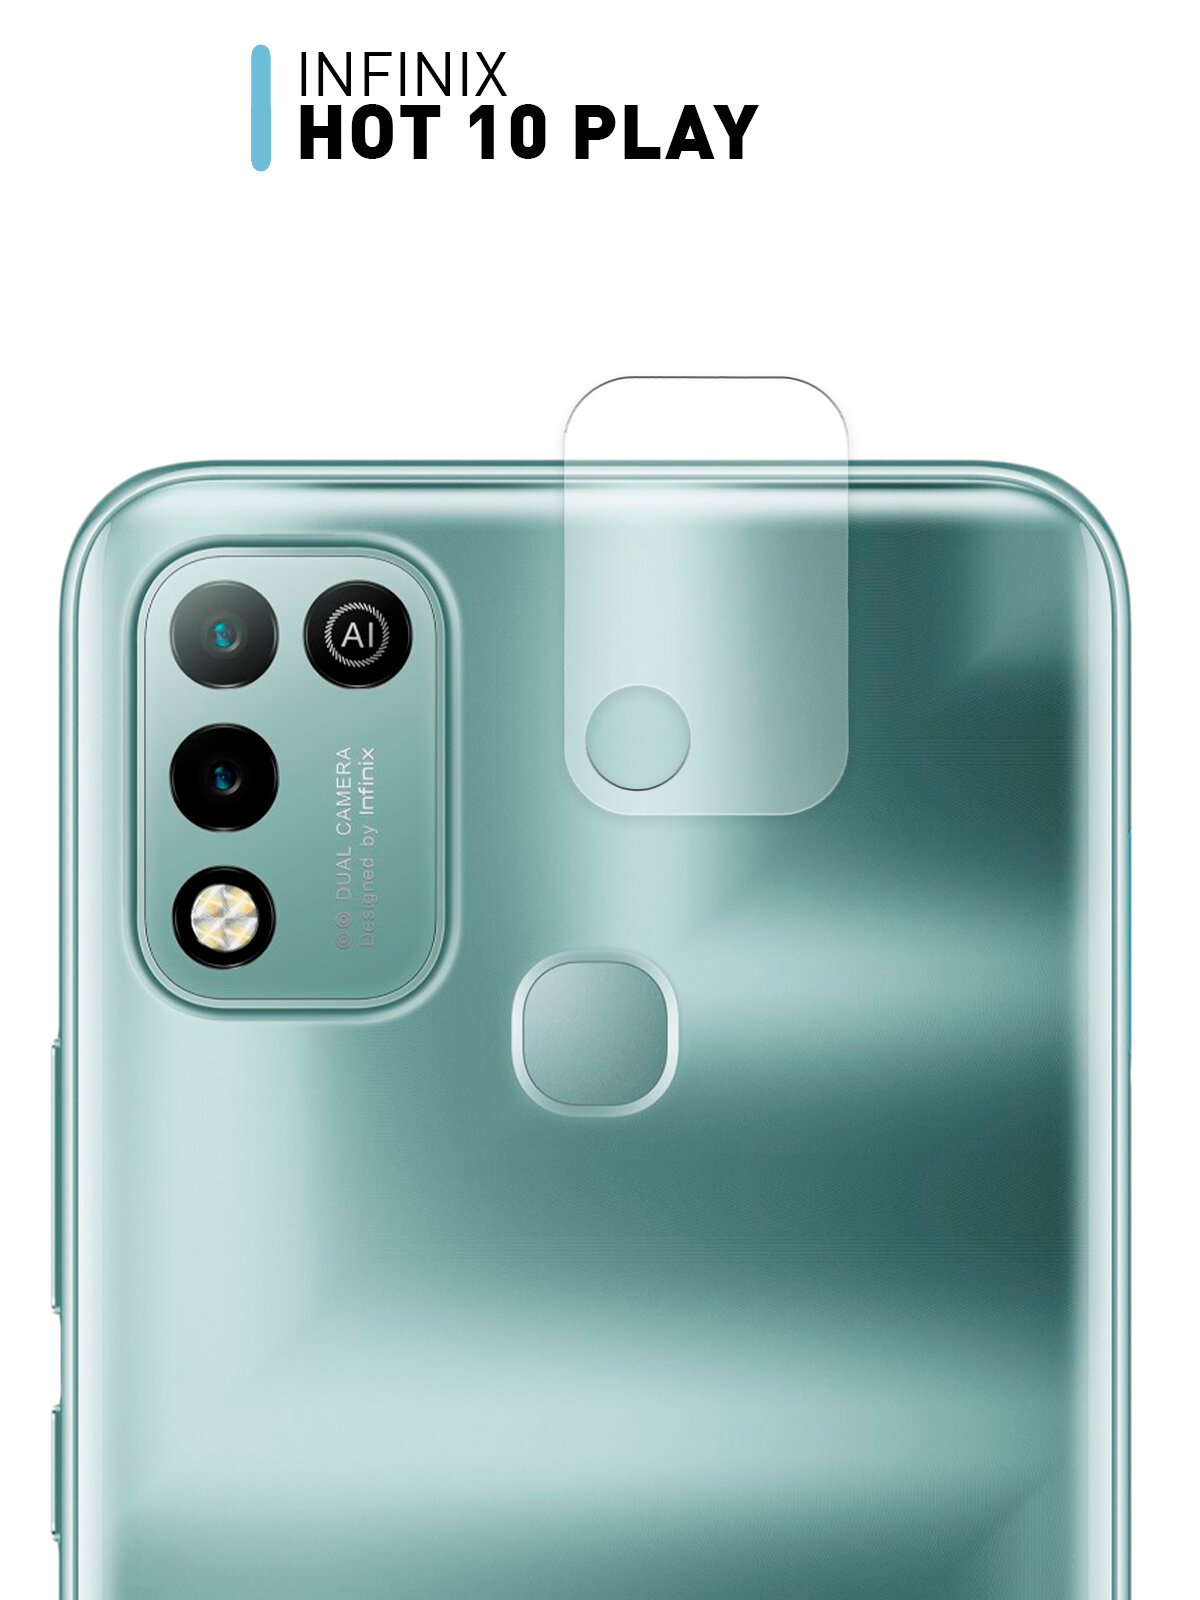 Стекло для защиты модуля камер для Infinix HOT 10 Play/ HOT 11 Play (Инфиникс) противоударное, прозрачное стекло, для за блока камер телефона